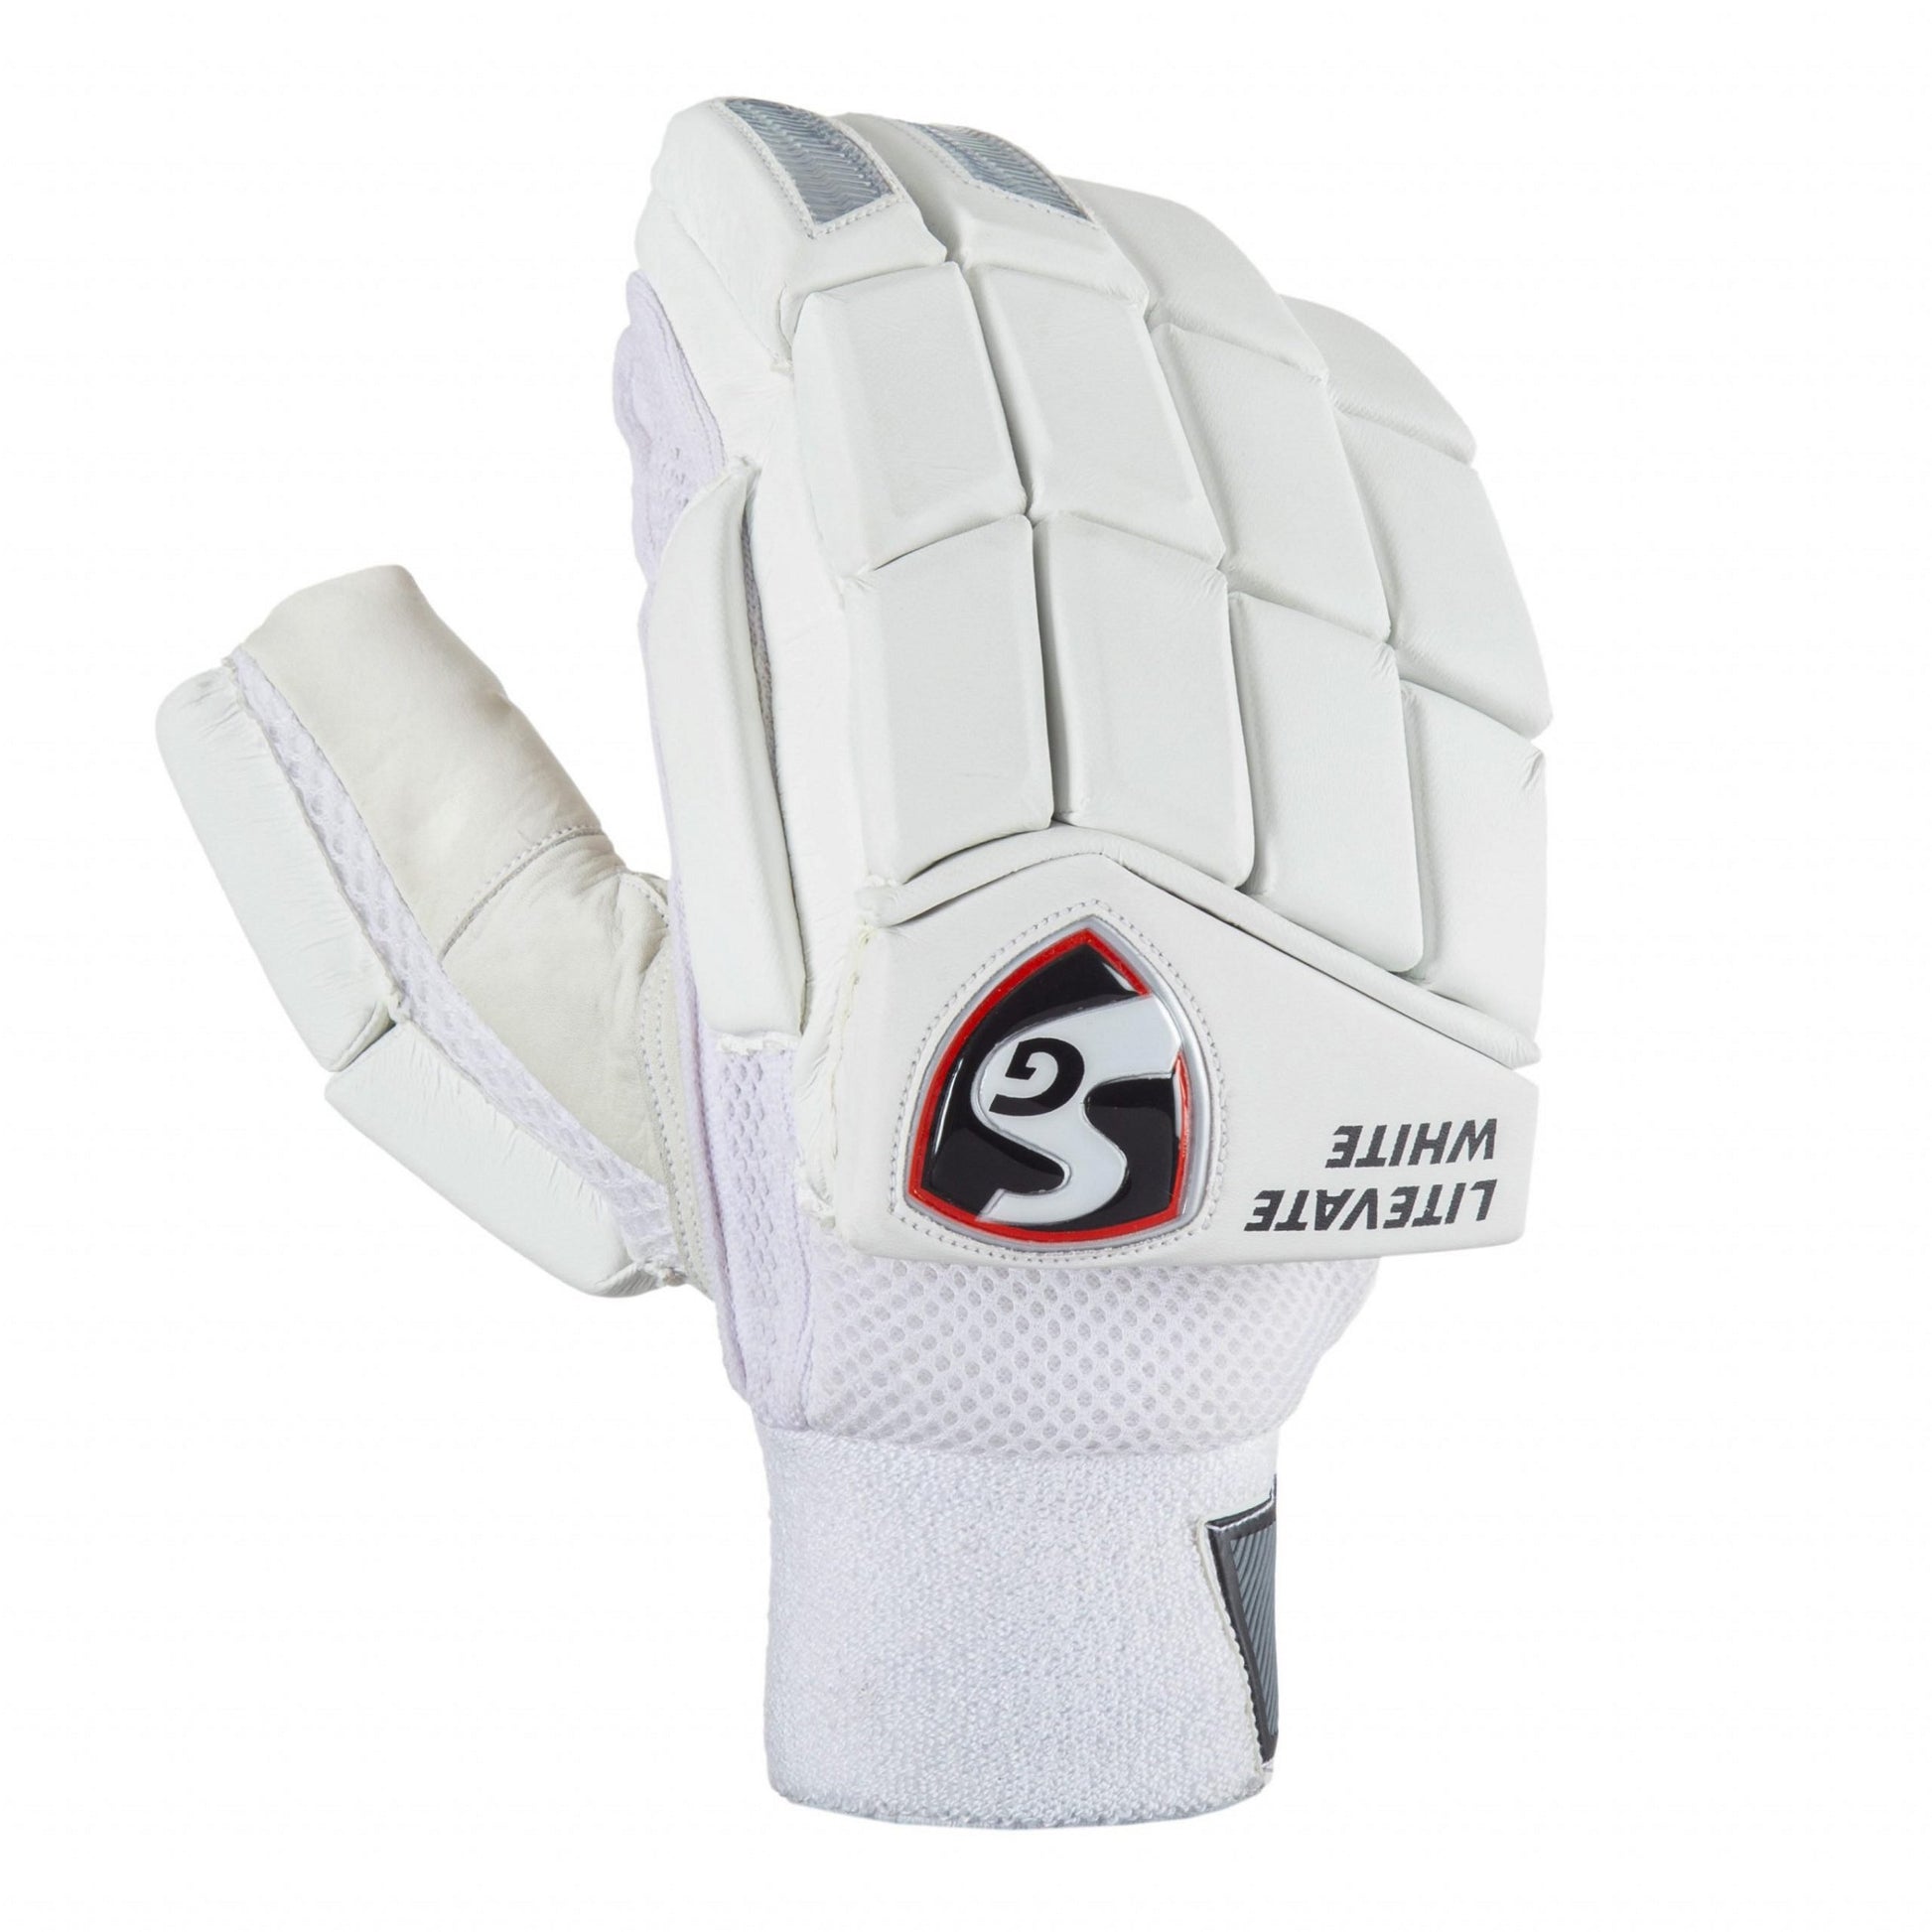 SG Litevate White Batting Gloves